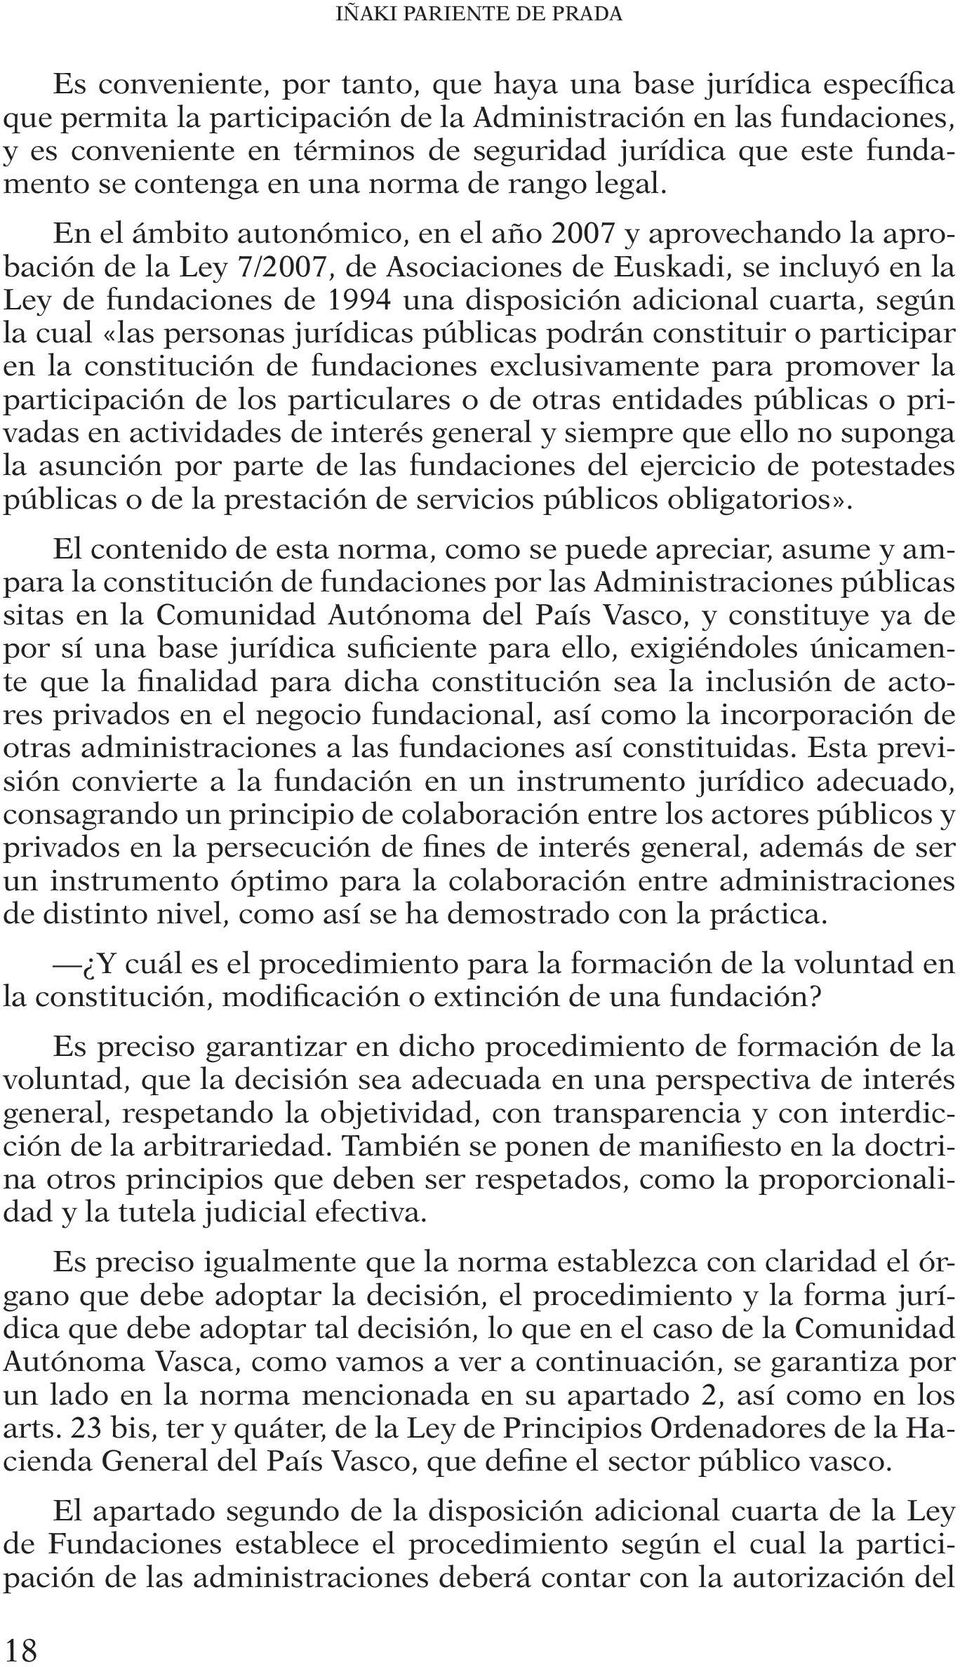 En el ámbito autonómico, en el año 2007 y aprovechando la aprobación de la Ley 7/2007, de Asociaciones de Euskadi, se incluyó en la Ley de fundaciones de 1994 una disposición adicional cuarta, según